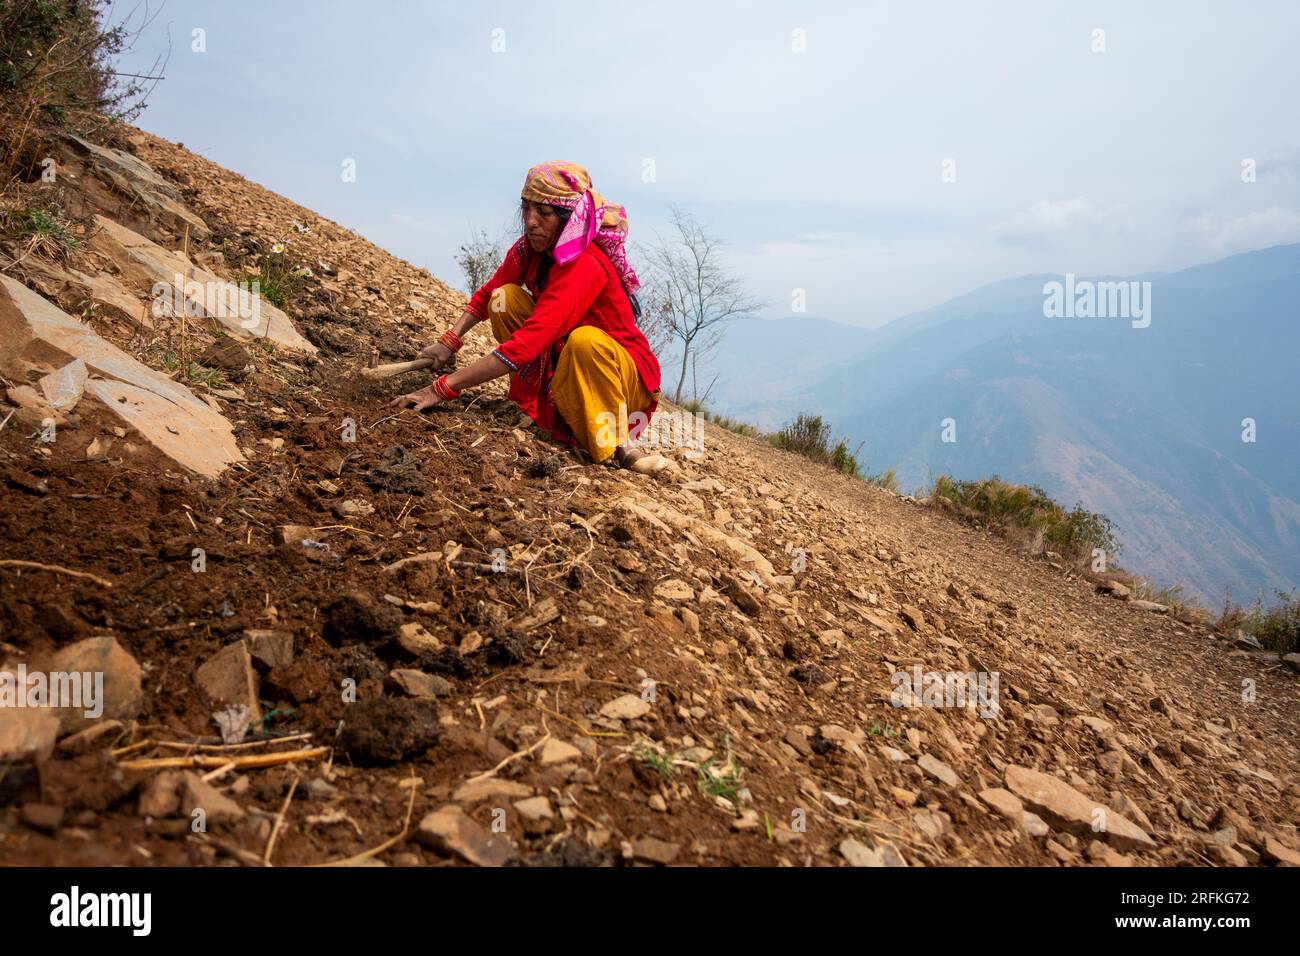 Oktober 14. 2022 Uttarakhand, Indien. Garhwali-Frau in traditioneller Kleidung, die sich um Ackerland kümmert, den Boden gräbt und pflegt. Die einheimische Landwirtschaft pra Stockfoto